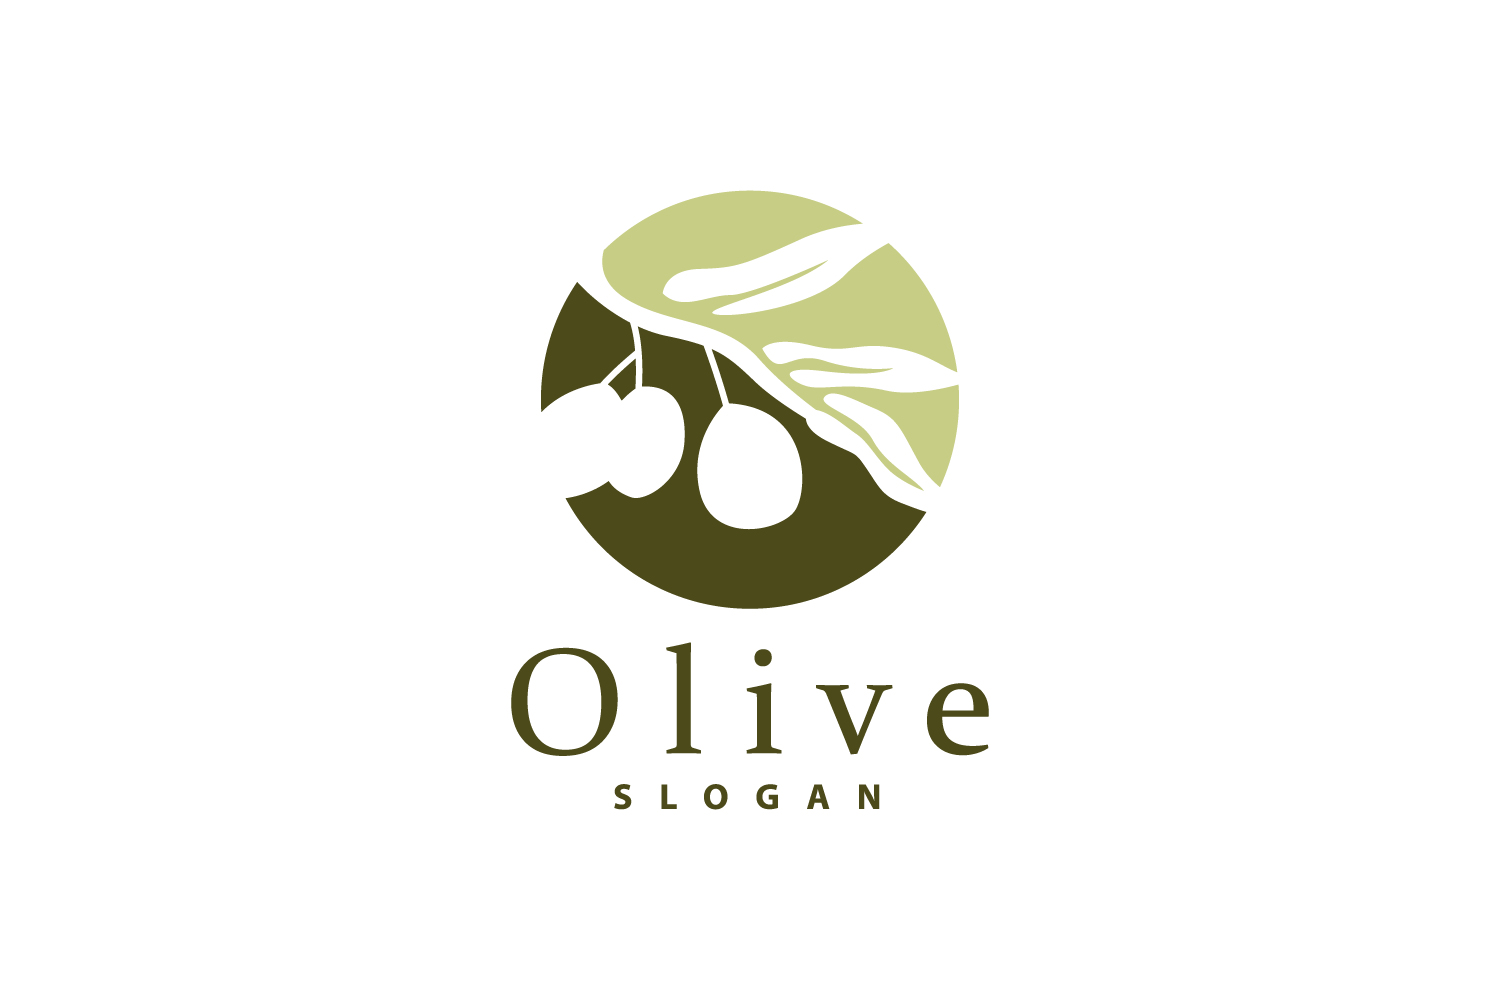 Olive Oil Logo Olive Leaf PlantV48